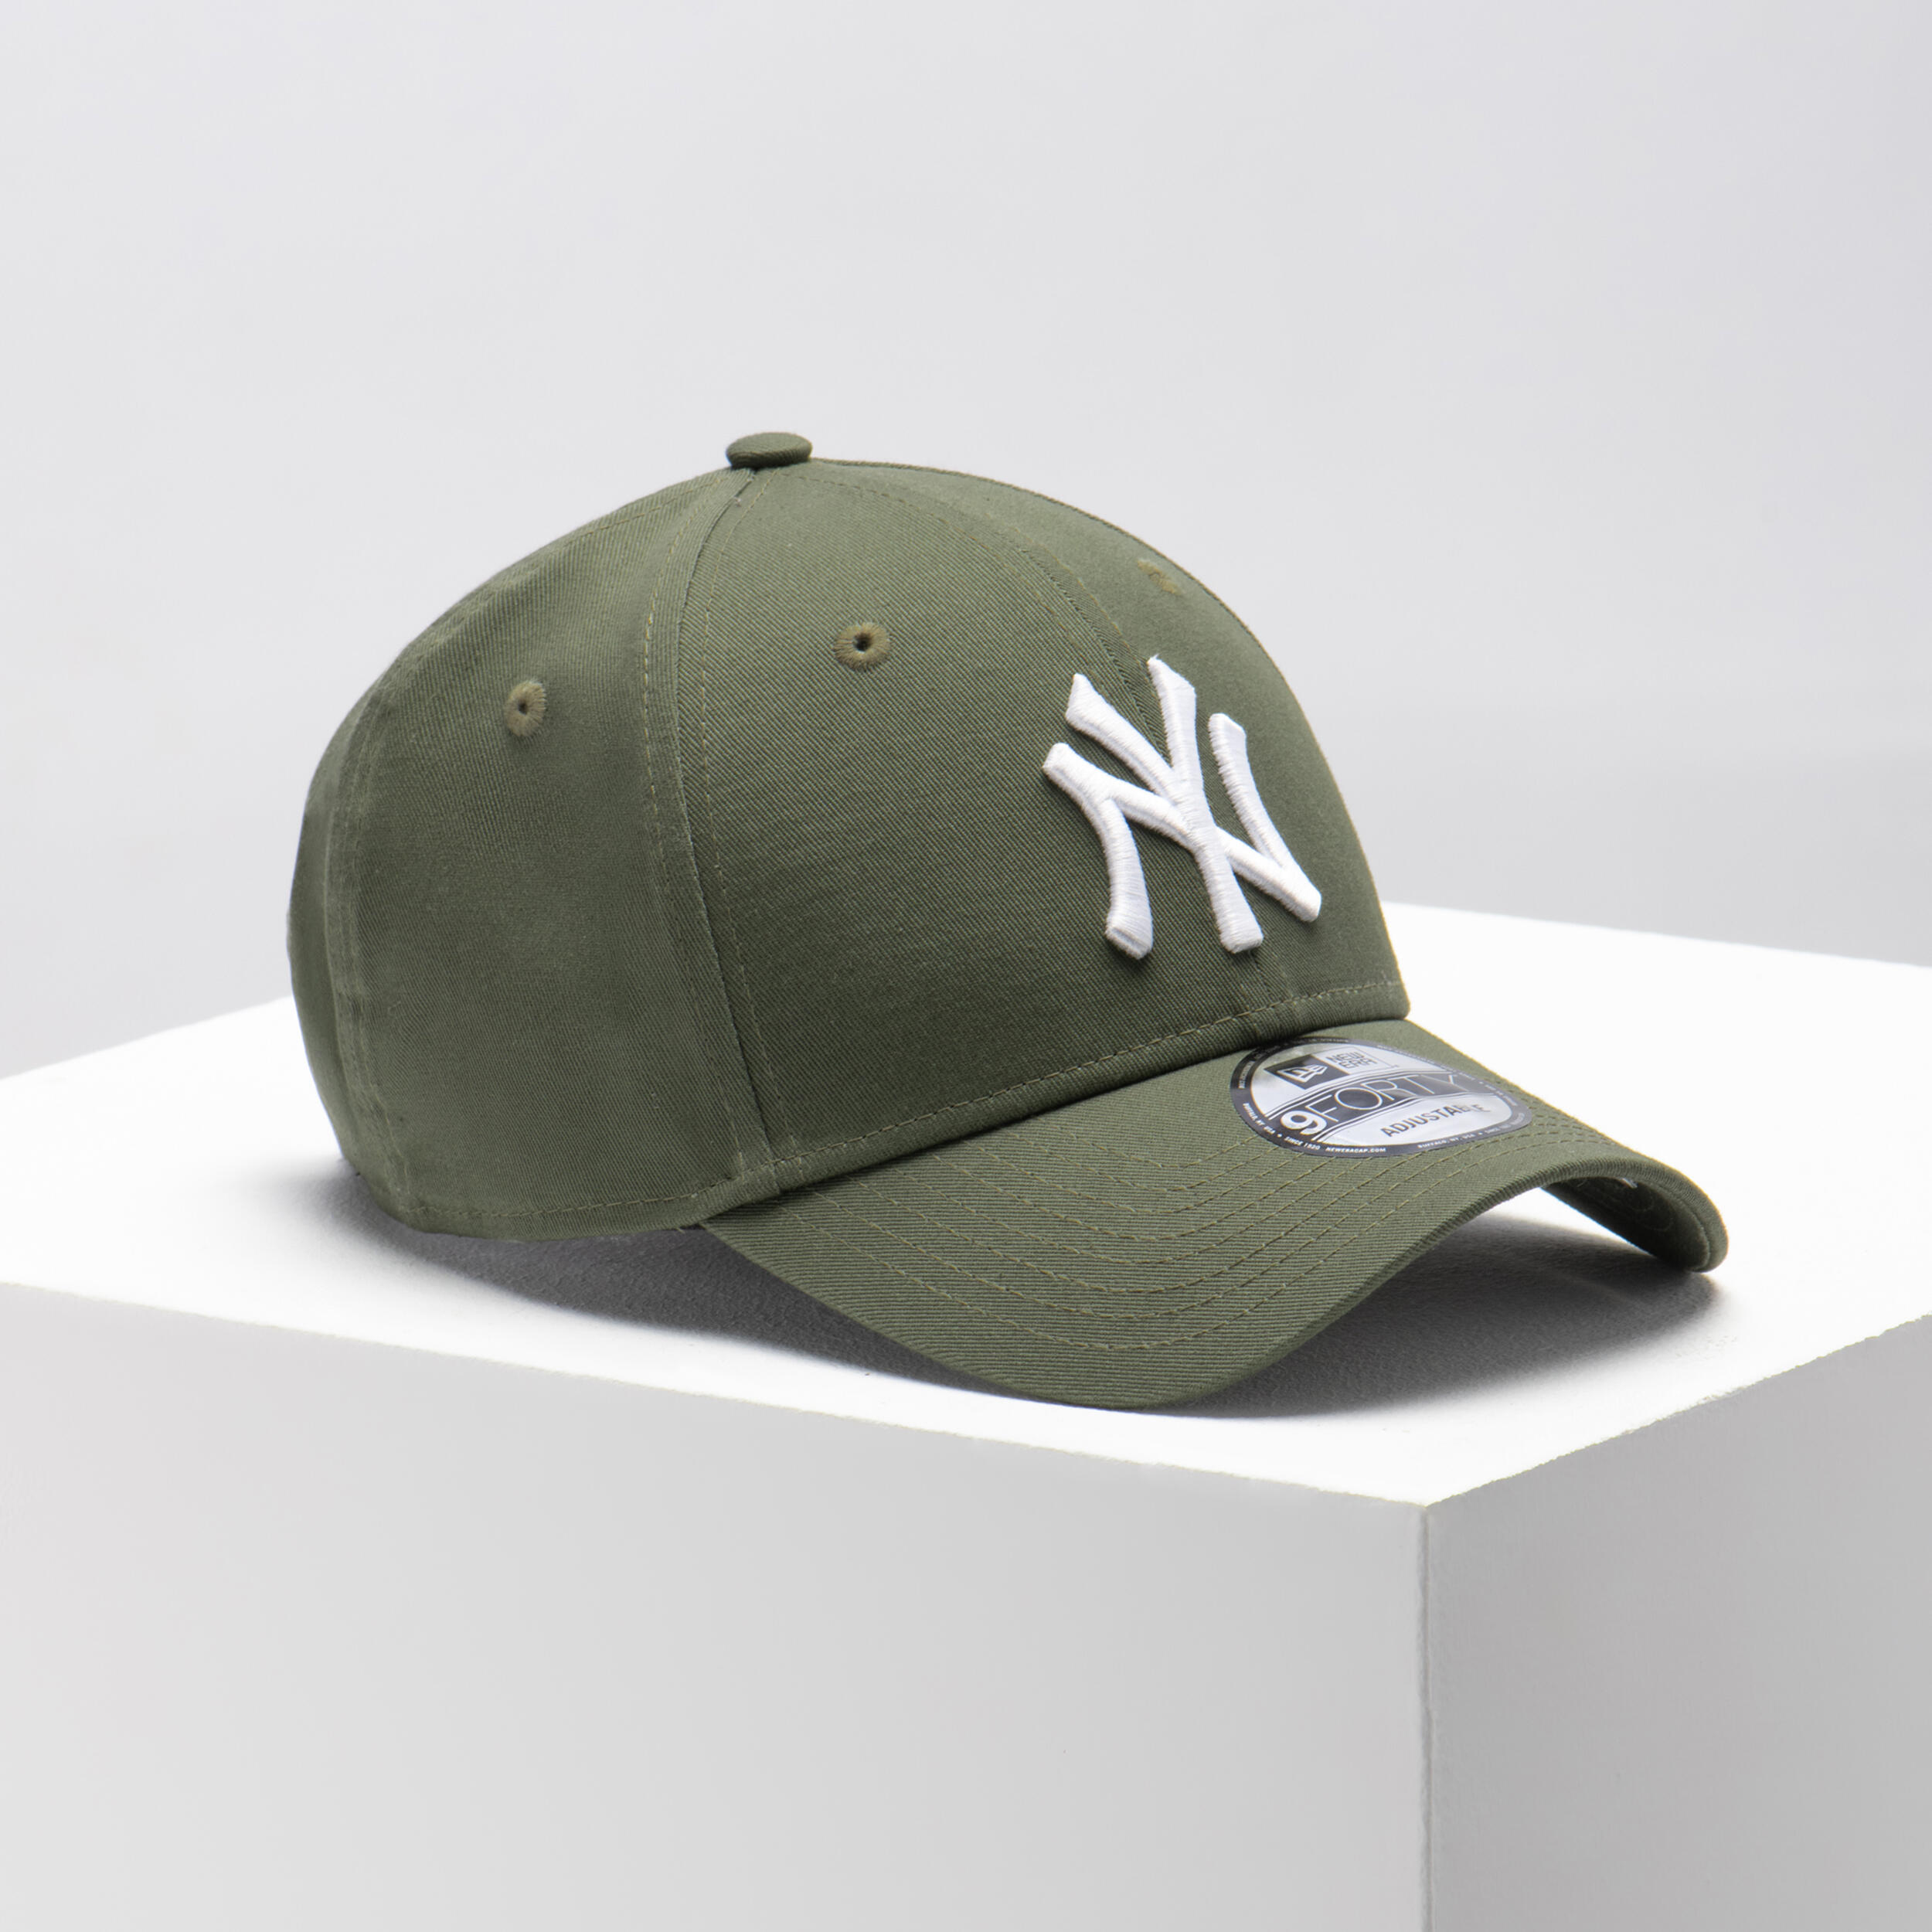 Men's / Women's MLB Baseball Cap New York Yankees - Green 2/7